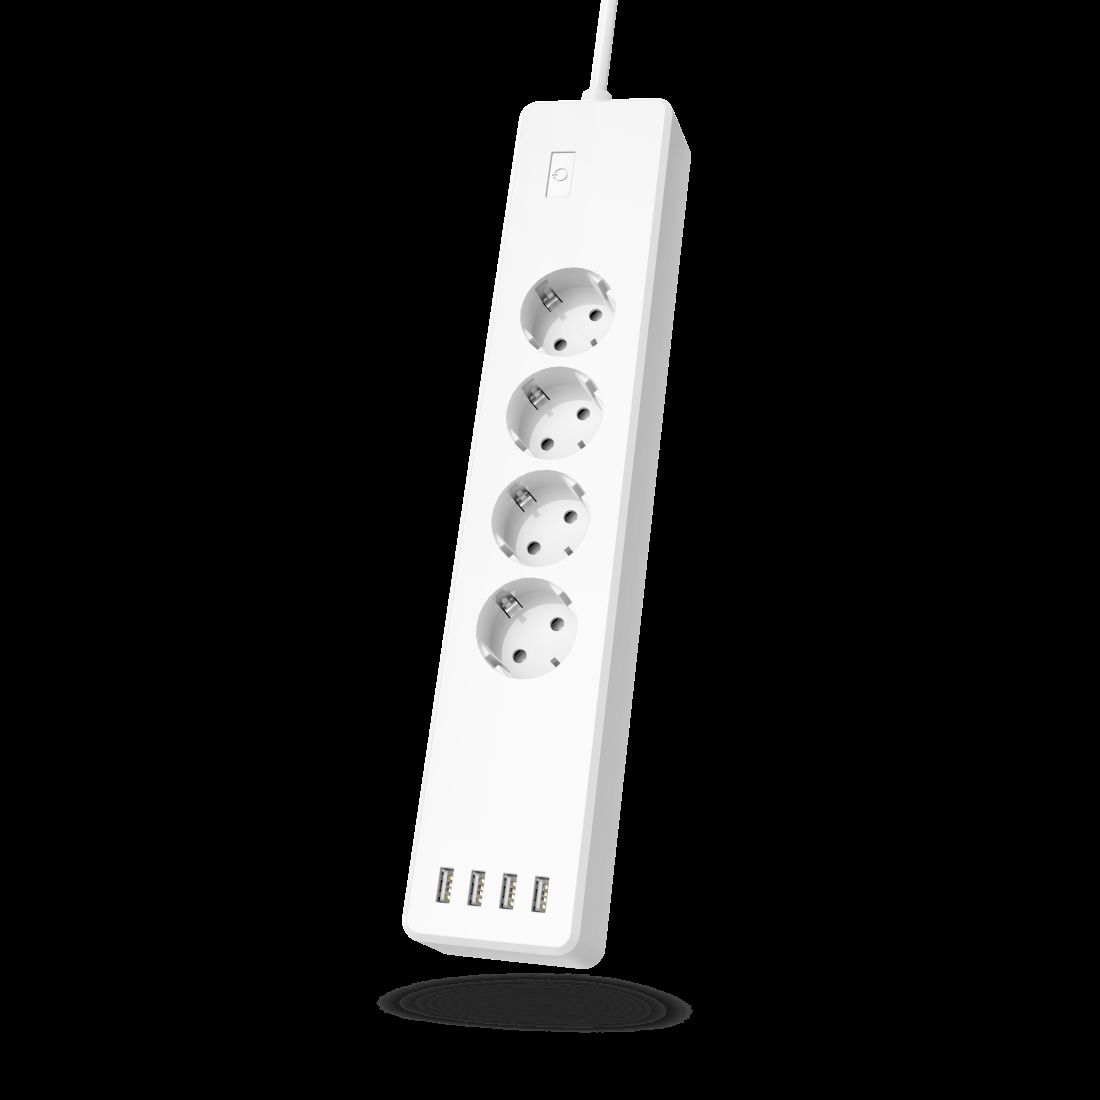 Listwa zasilająca Hama WiFi do sterowania oświetleniem domu czy konsolą z kanapy lub fotela